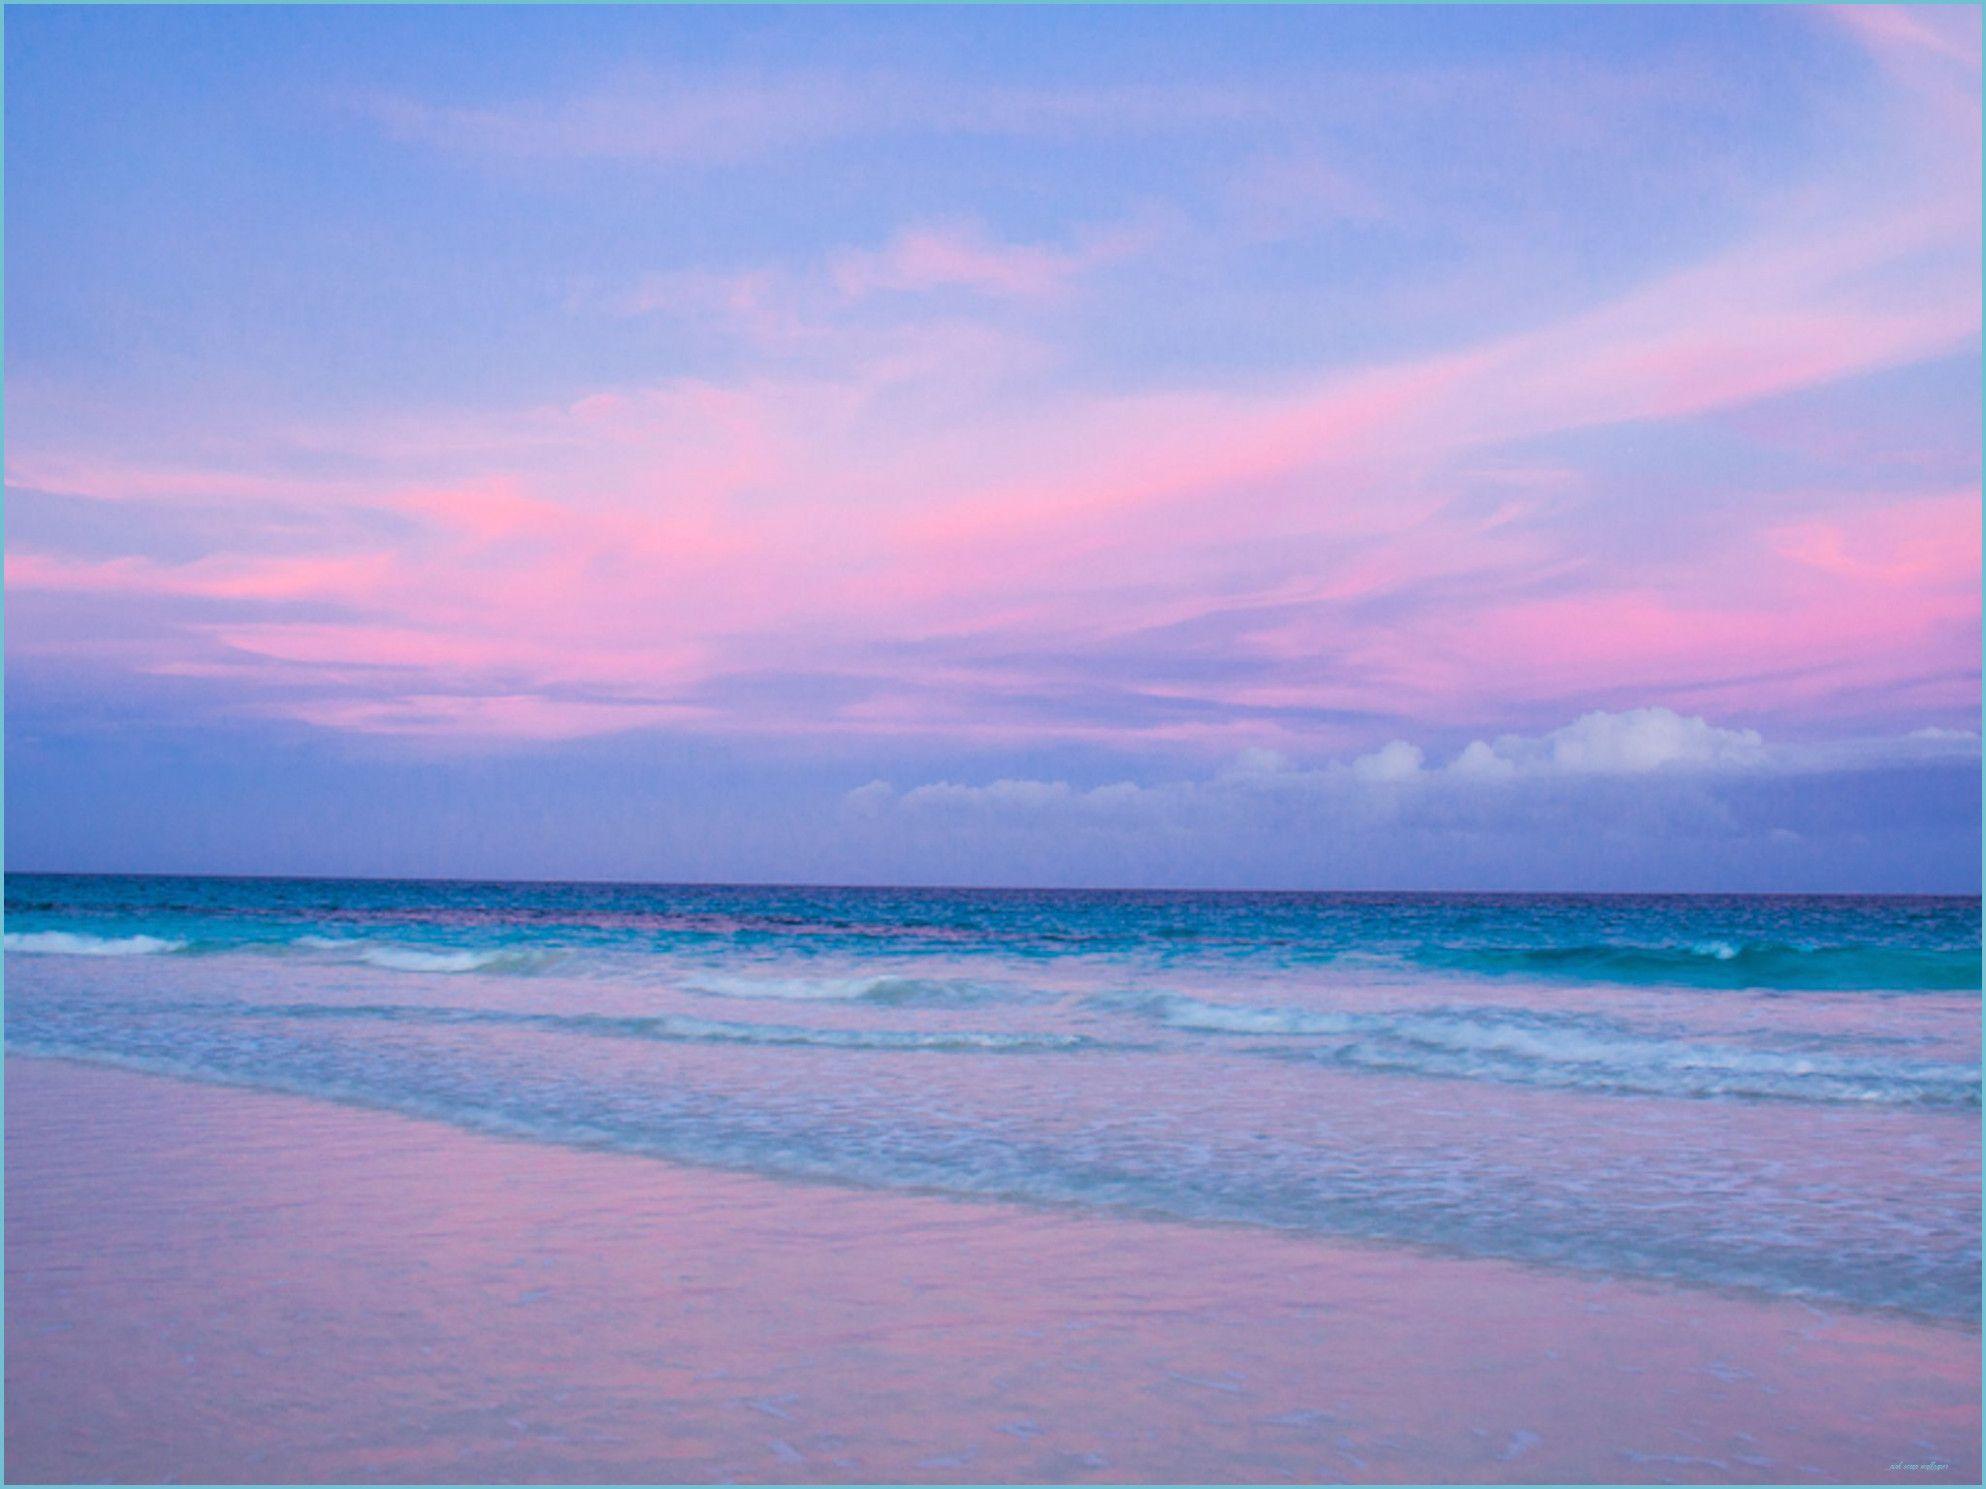 1986x1489 Hình nền bãi biển màu hồng - Nền bãi biển màu hồng miễn phí hàng đầu - hình nền đại dương màu hồng